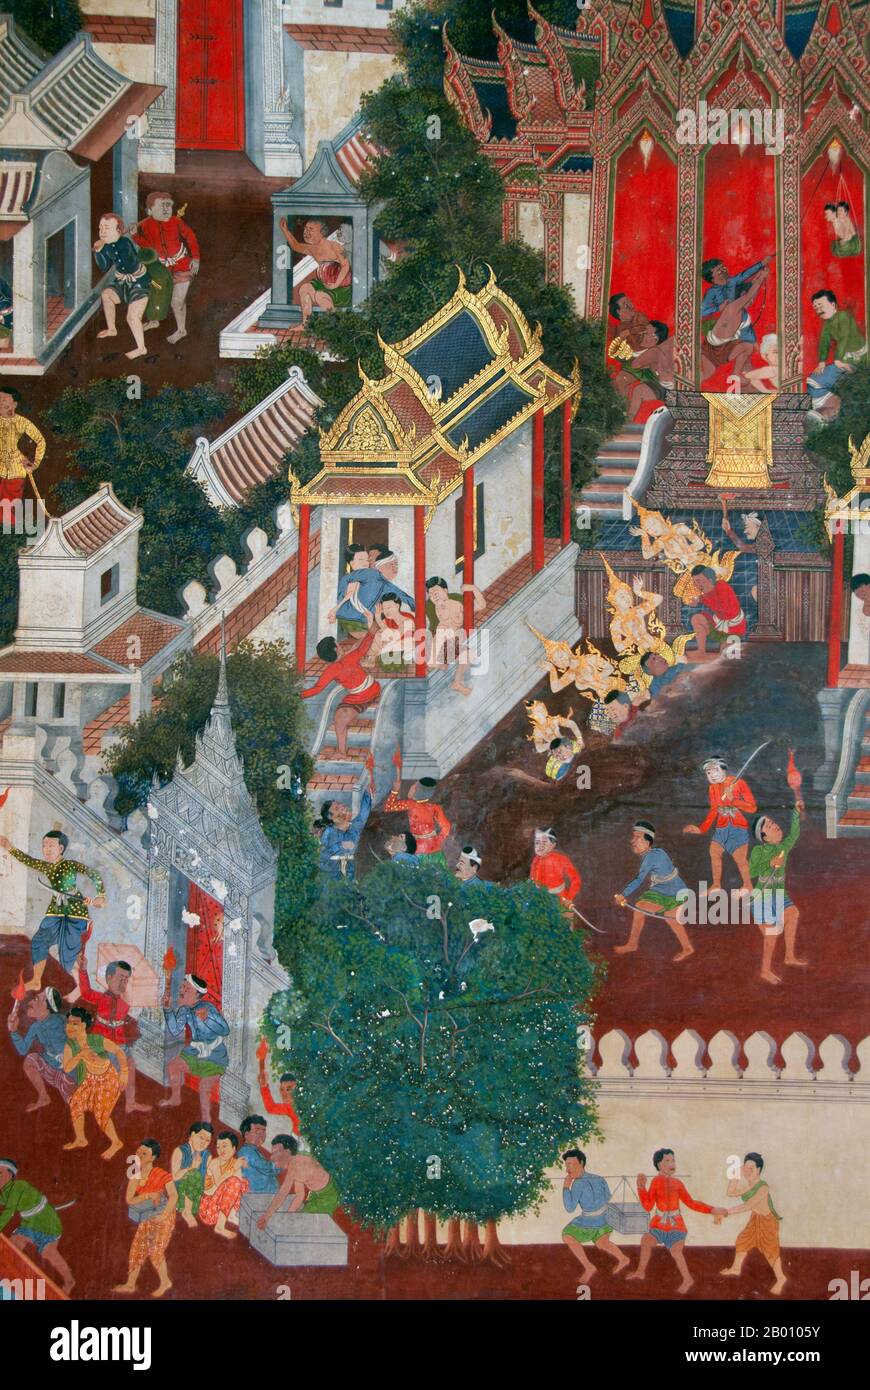 Thailand: Wandbild, Wat Saket und der Goldene Berg, Bangkok. Wat Saket Ratcha Wora Maha Wihan (gewöhnlich Wat Saket) stammt aus der Ayutthaya-Ära, als er Wat Sakae genannt wurde. König Rama I (1736 - 1809) oder Buddha Yodfa Chulaloke hat den Tempel renoviert und ihn in Wat Saket umbenannt. Der Goldene Berg (Phu Khao Thong) ist ein steiler Hügel innerhalb des Wat Saket-Geländes. Es handelt sich nicht um einen natürlichen Aufschluss, sondern um einen künstlichen Hügel, der unter der Herrschaft von Rama III (1787 - 1851) oder König Jessadabodindra errichtet wurde. Stockfoto